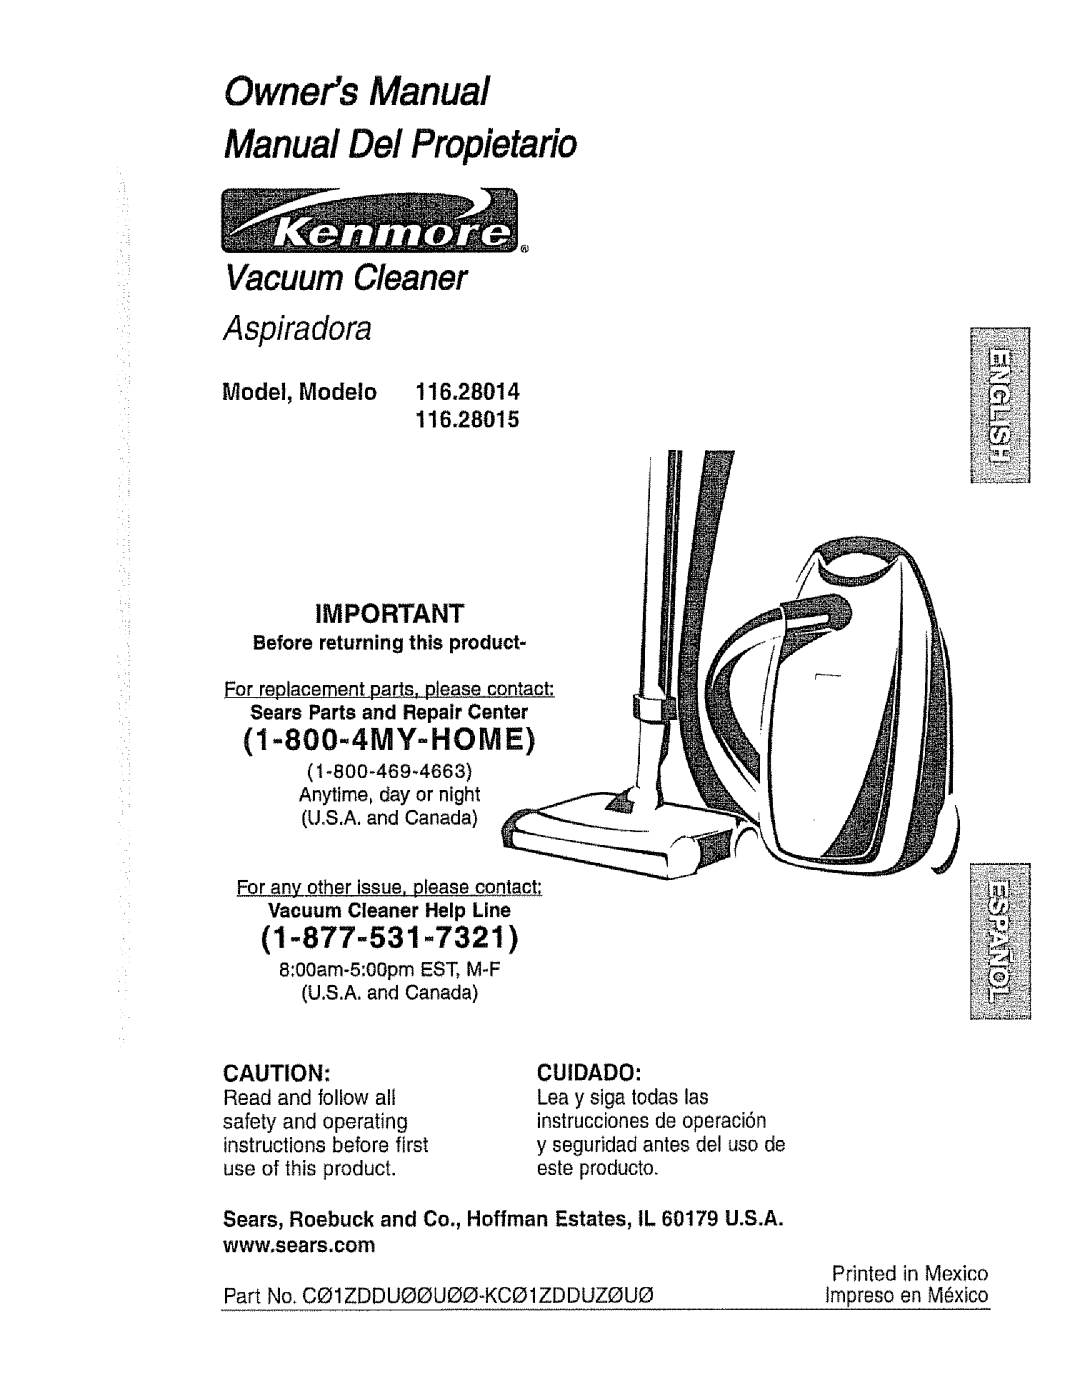 Kenmore 116.28014 owner manual 1-877-531-7321, 116.28015, Aspiradora, Vacuum Cleaner, 1-800-4MY-HOME, Owners Manual 